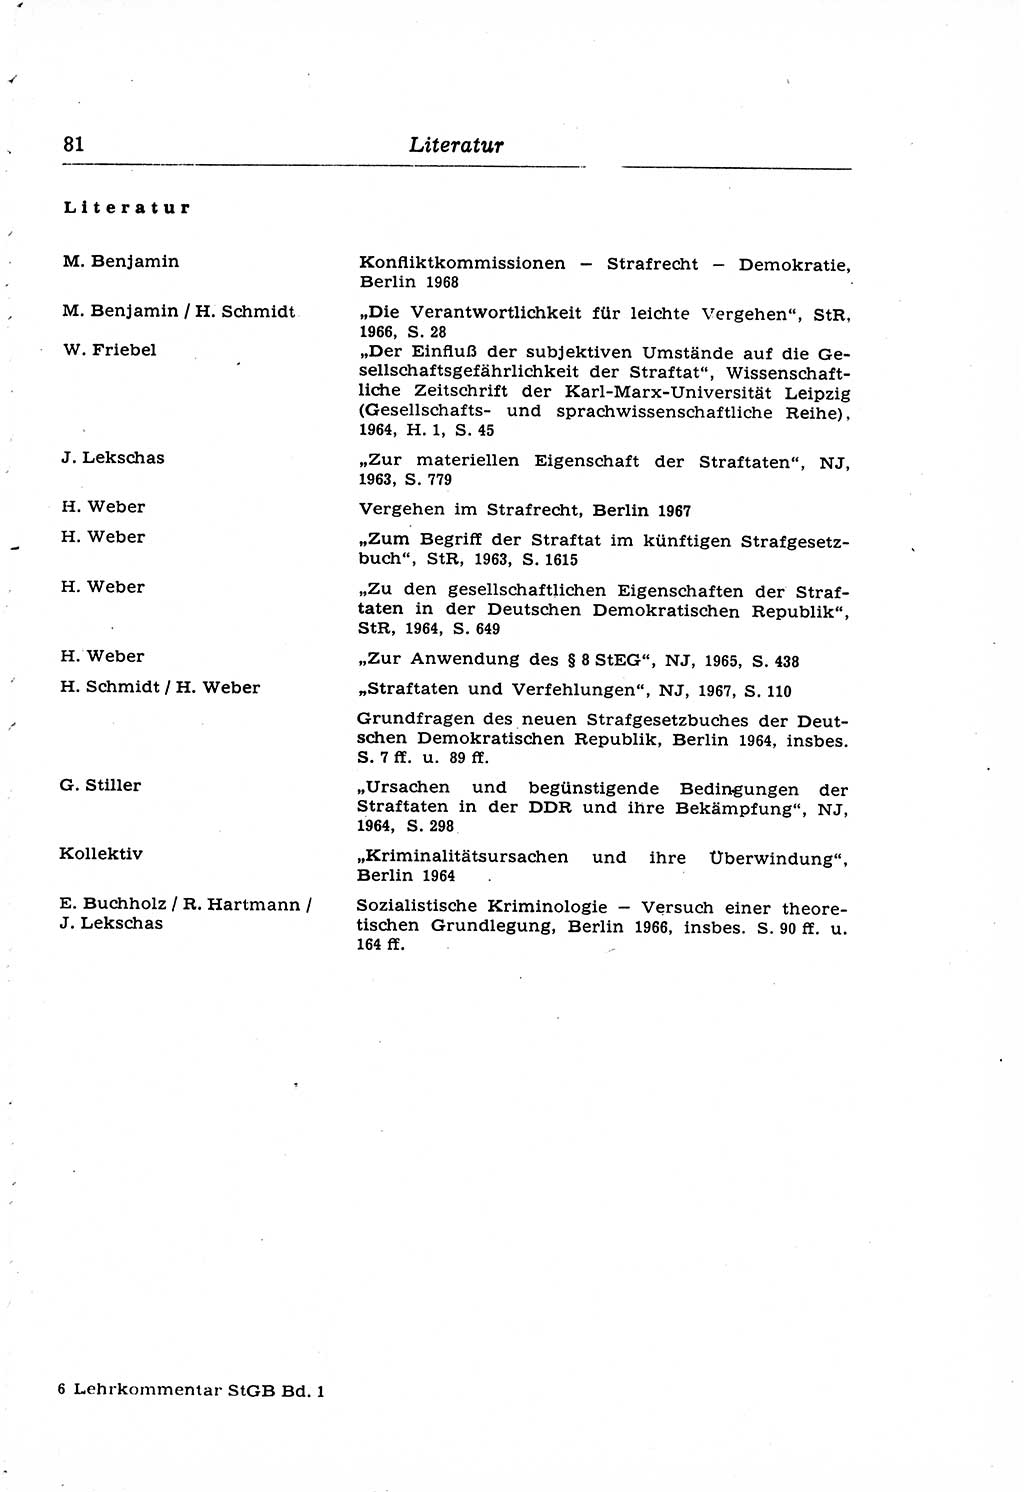 Strafrecht der Deutschen Demokratischen Republik (DDR), Lehrkommentar zum Strafgesetzbuch (StGB), Allgemeiner Teil 1969, Seite 81 (Strafr. DDR Lehrkomm. StGB AT 1969, S. 81)